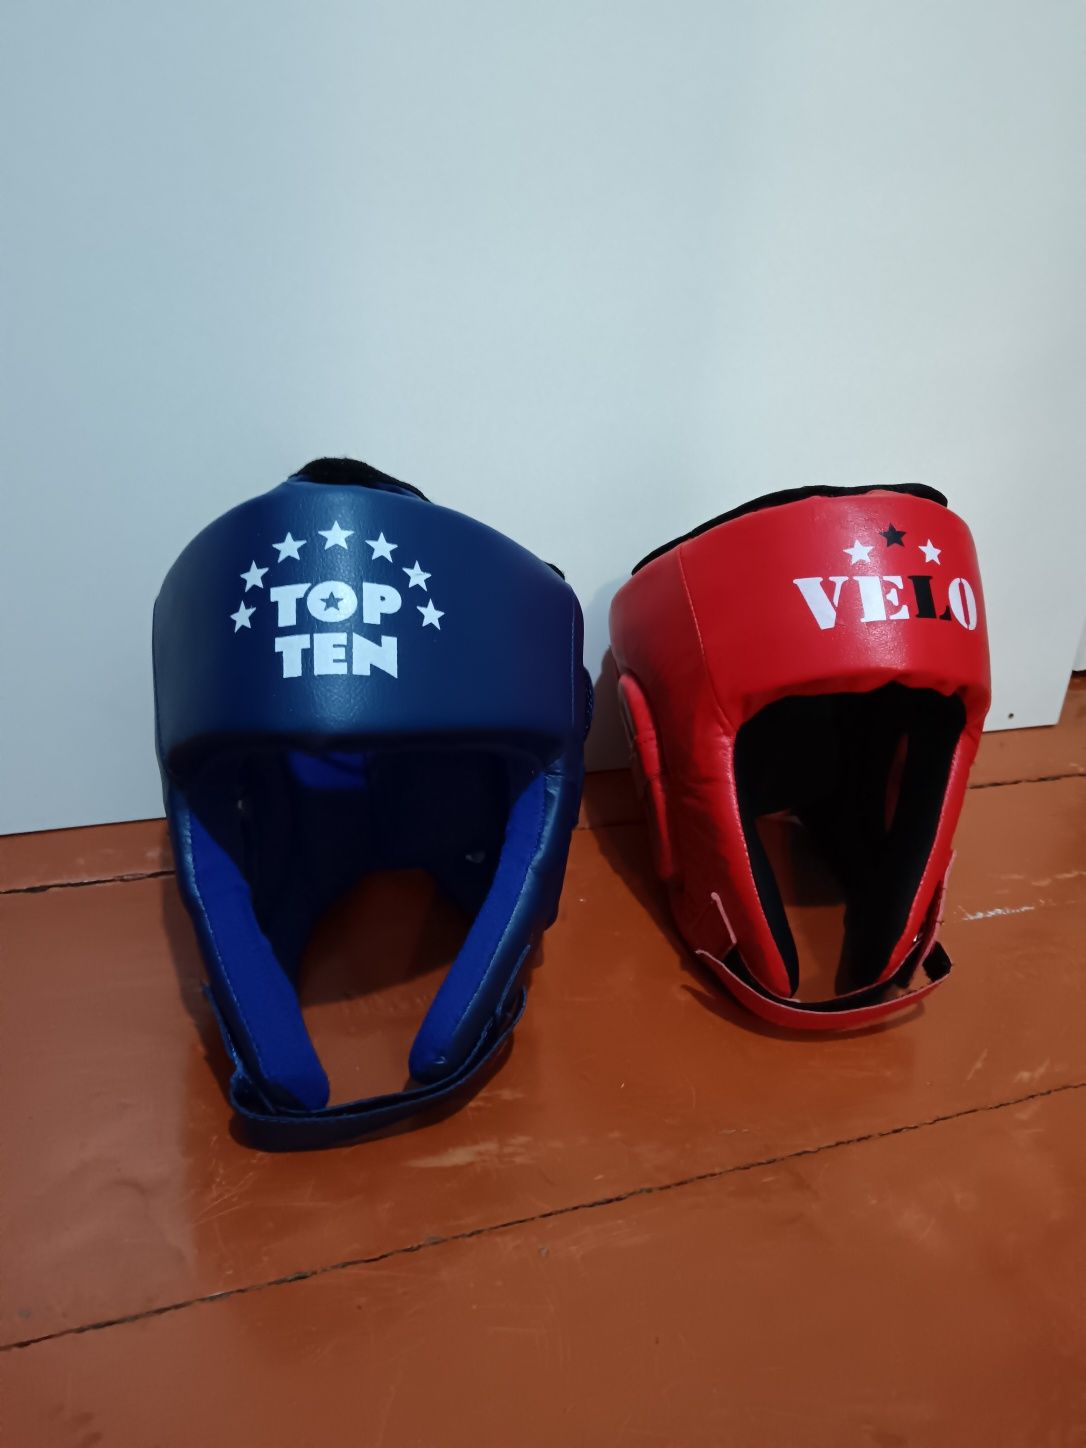 Боксерские шлемы Размеры L но маломерки